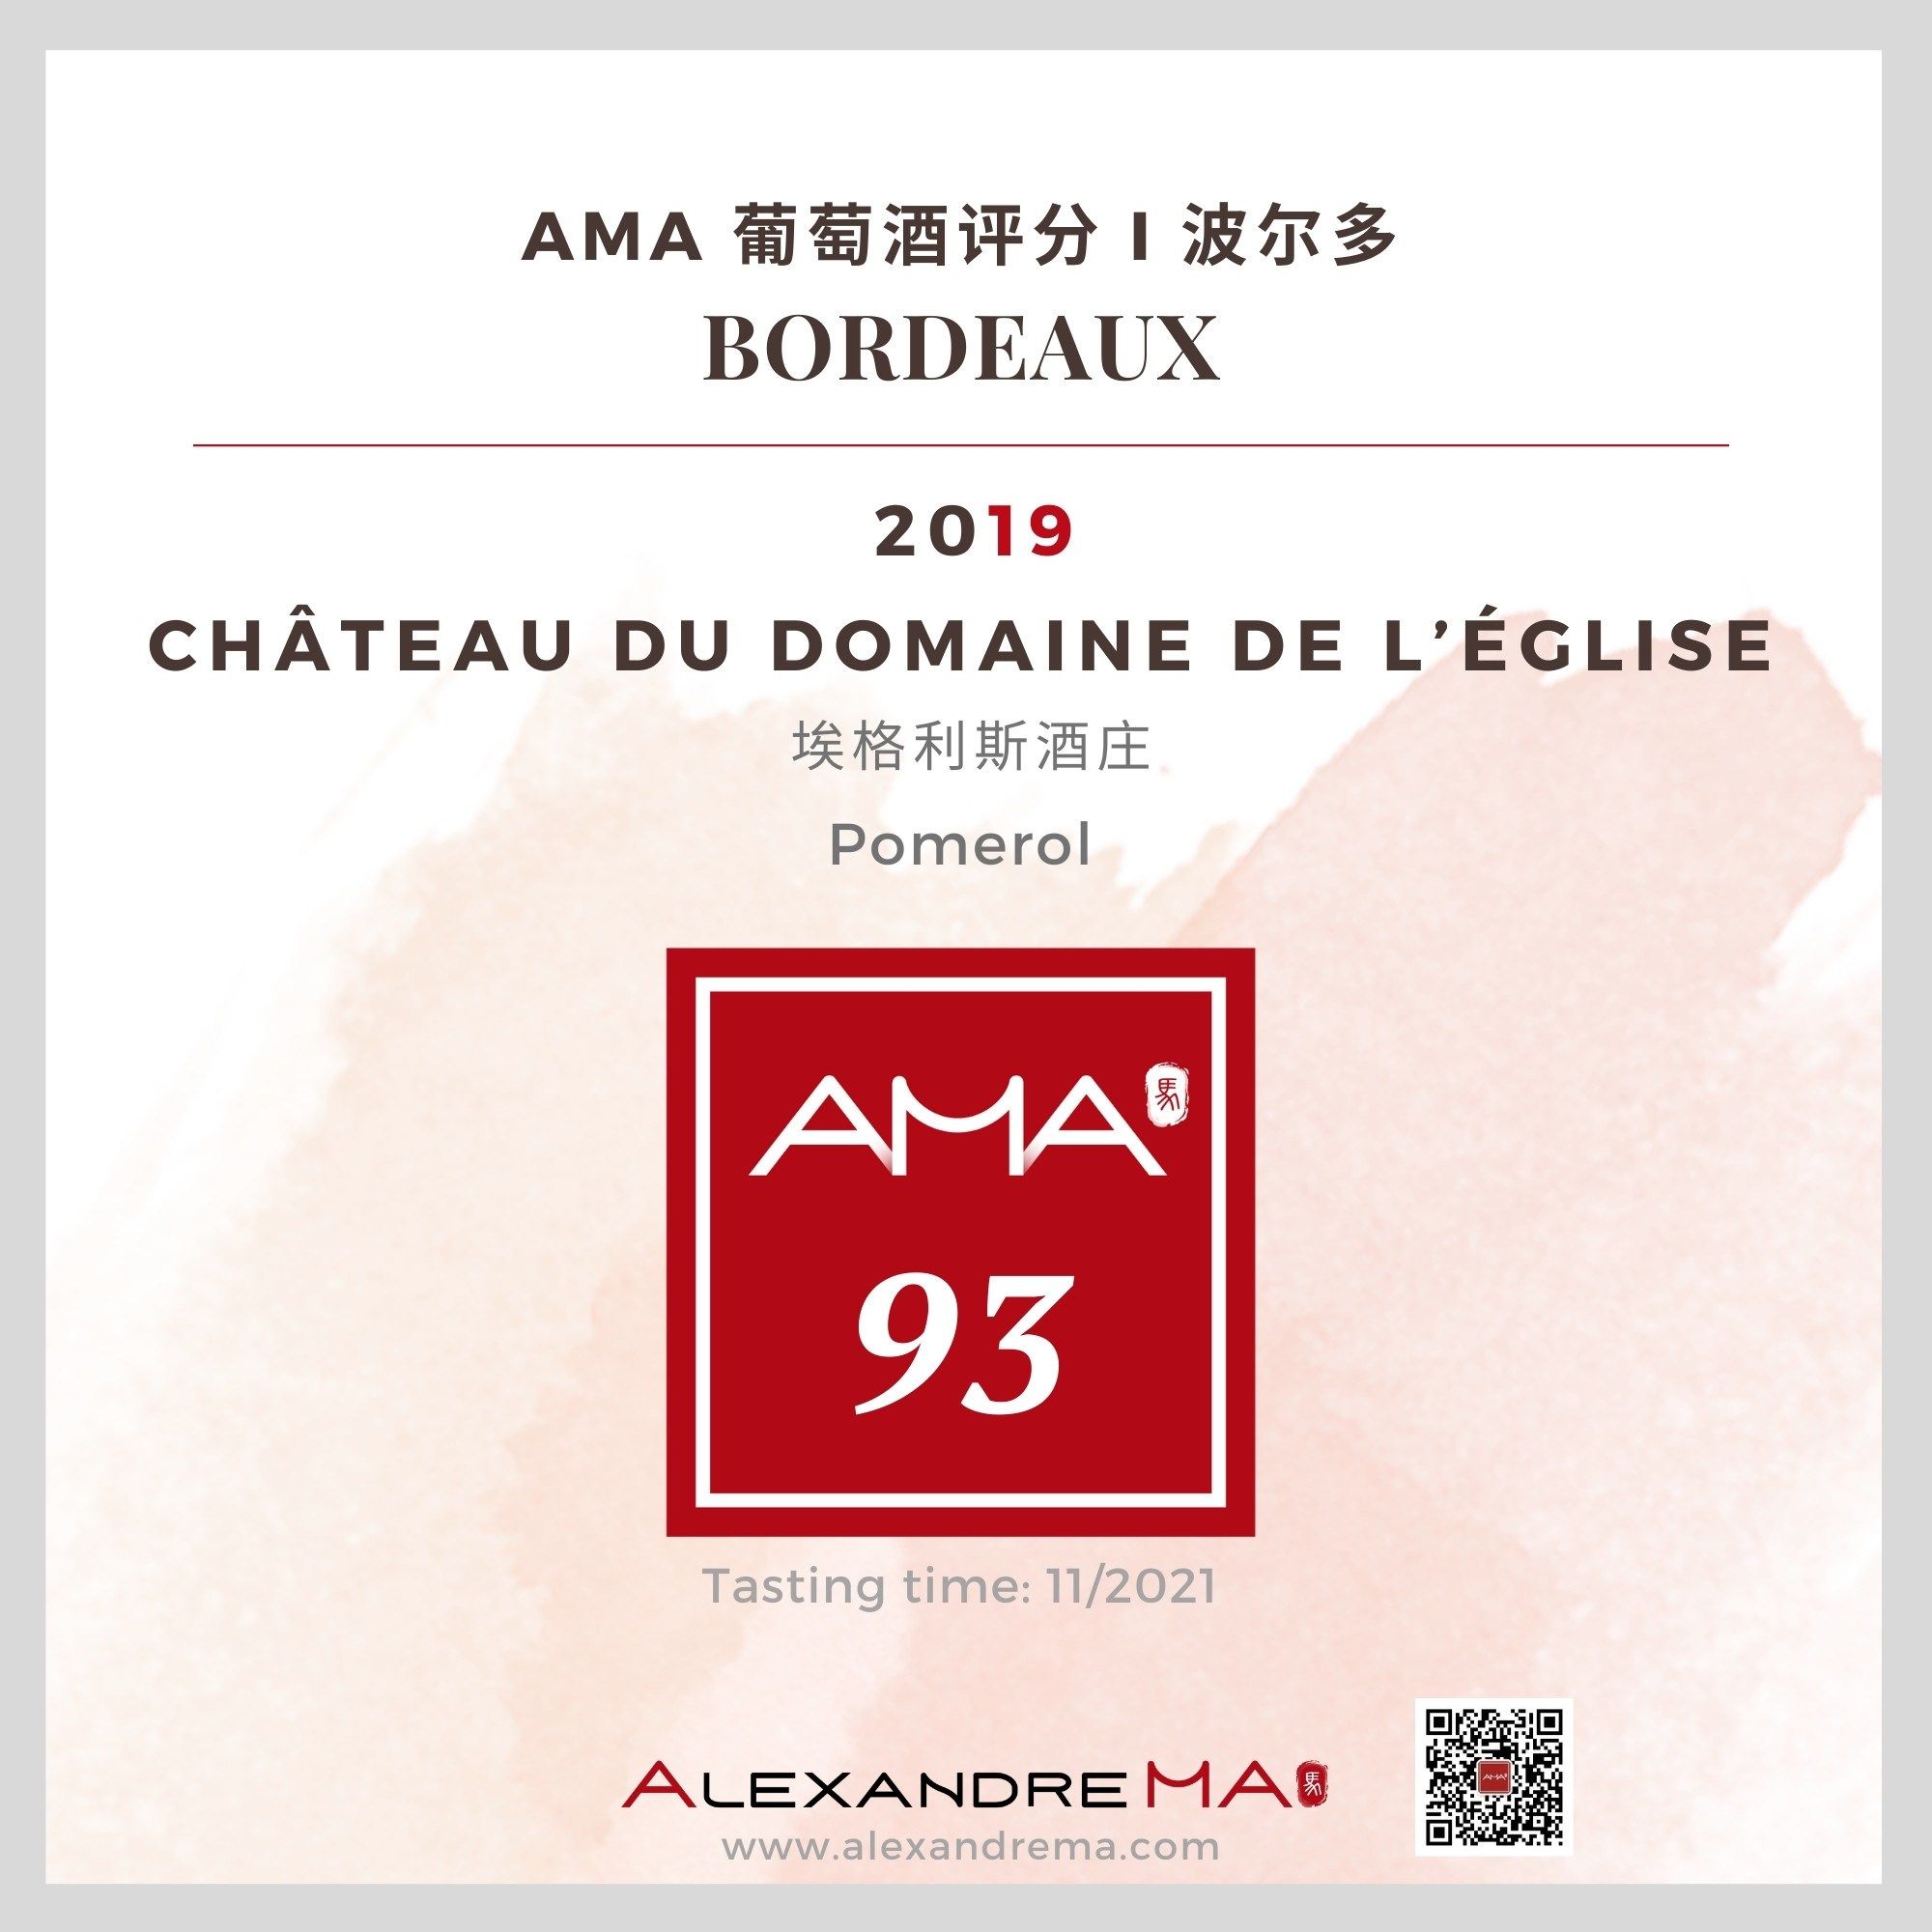 Château du Domaine de l’Eglise 2019 埃格利斯酒庄 - Alexandre Ma